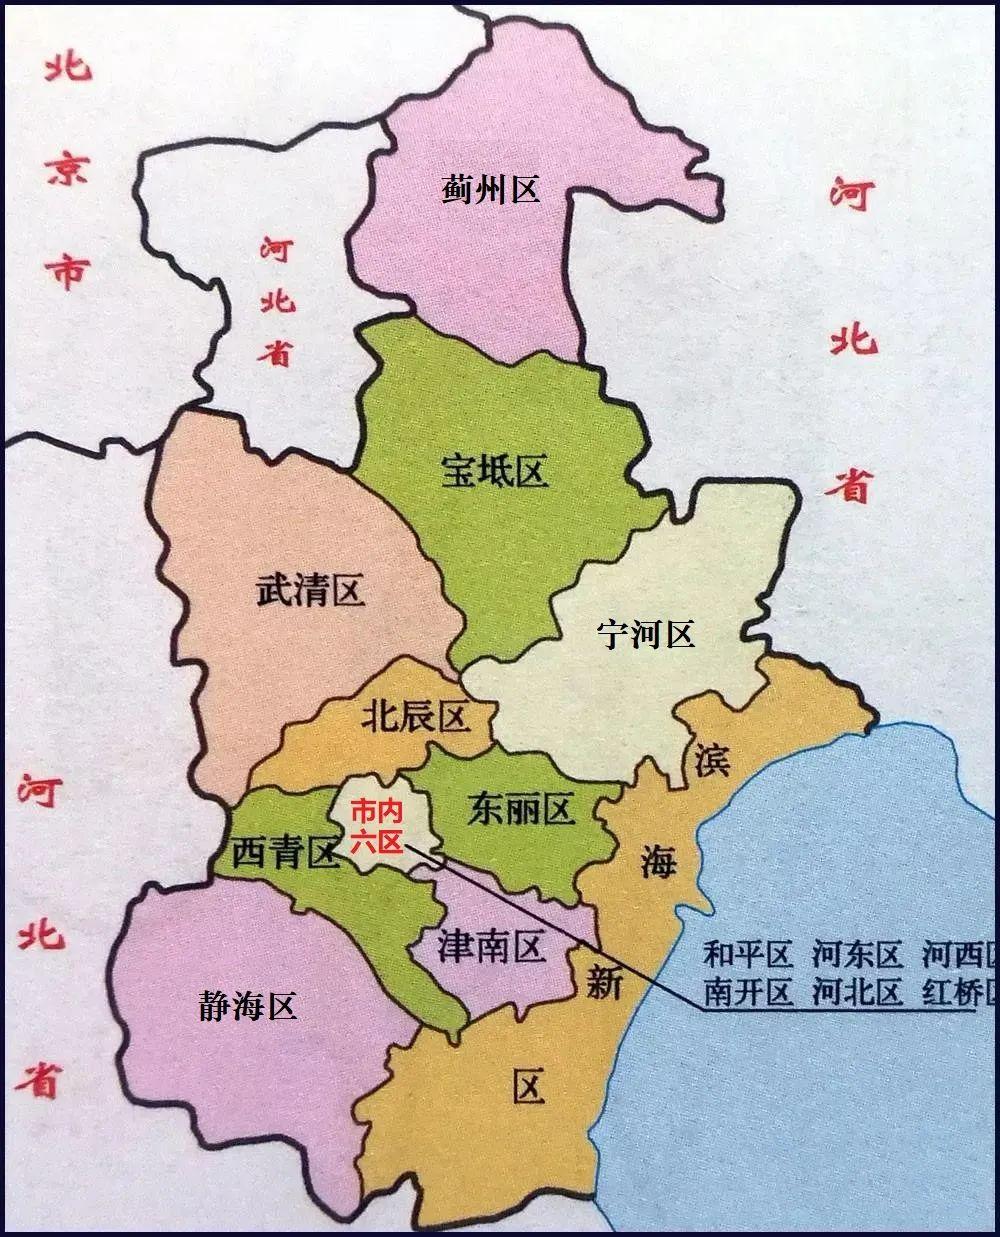 天津市优质区域介绍之和平区主要是教育和配套房产